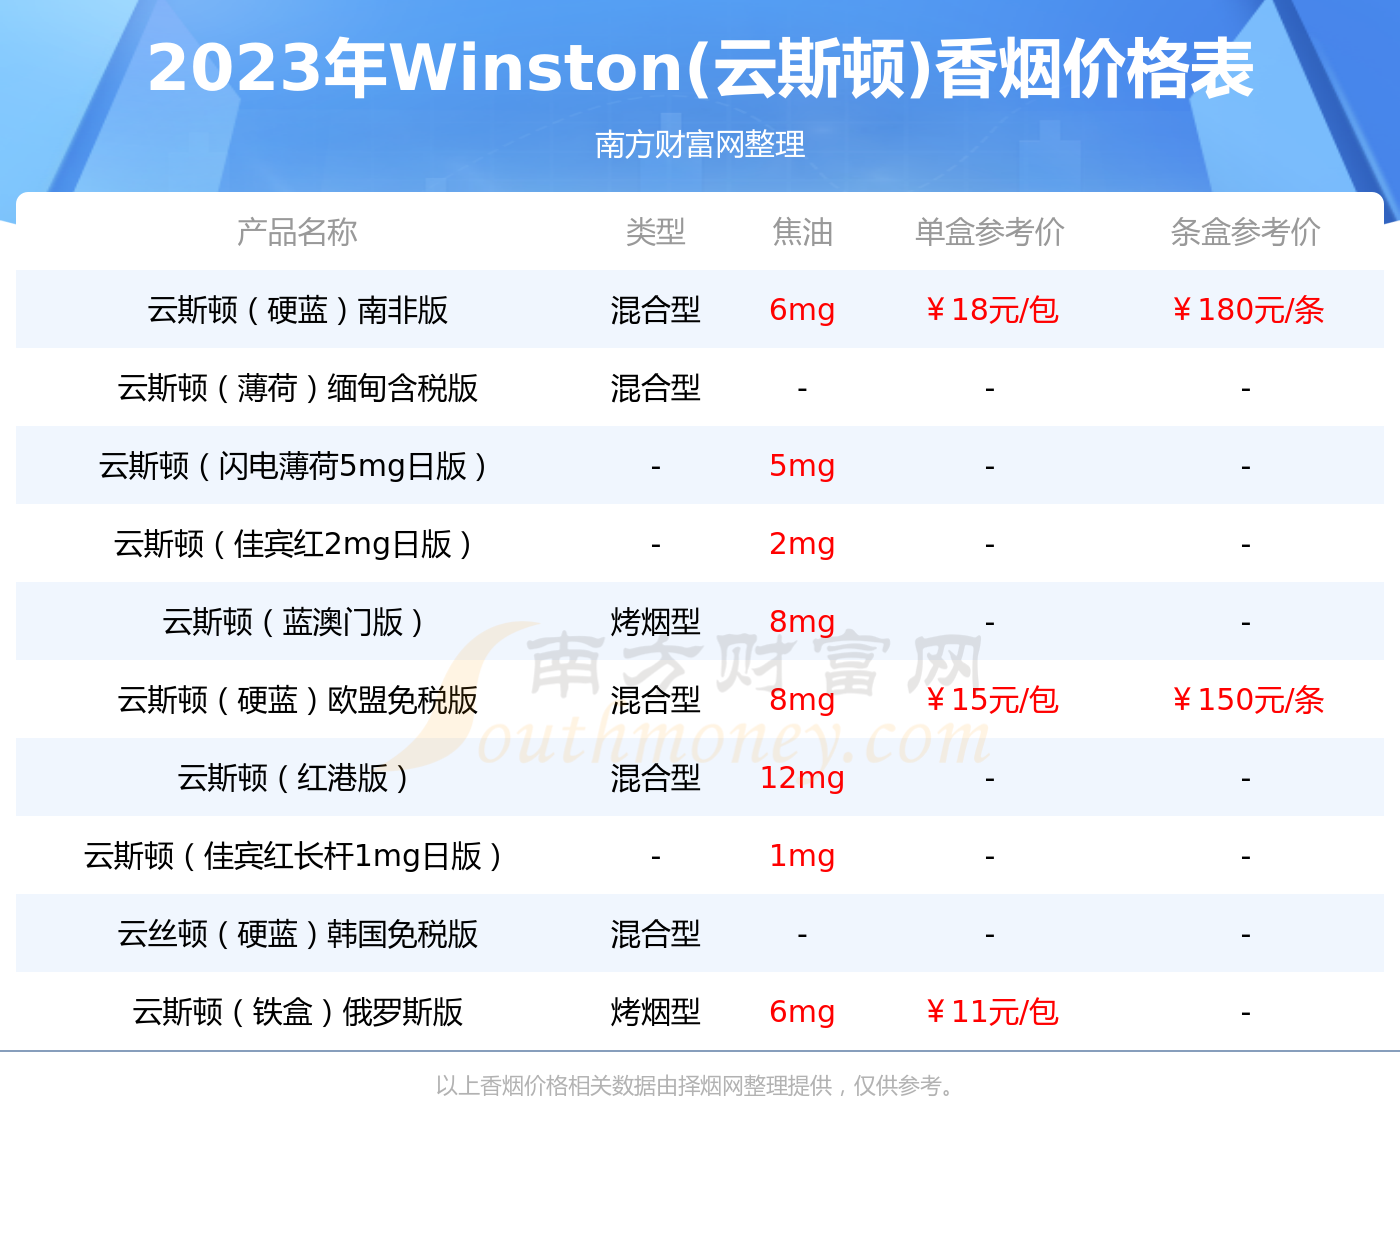 2023年云斯顿红 winston classic多少钱一包(winston(云斯顿)香烟价格